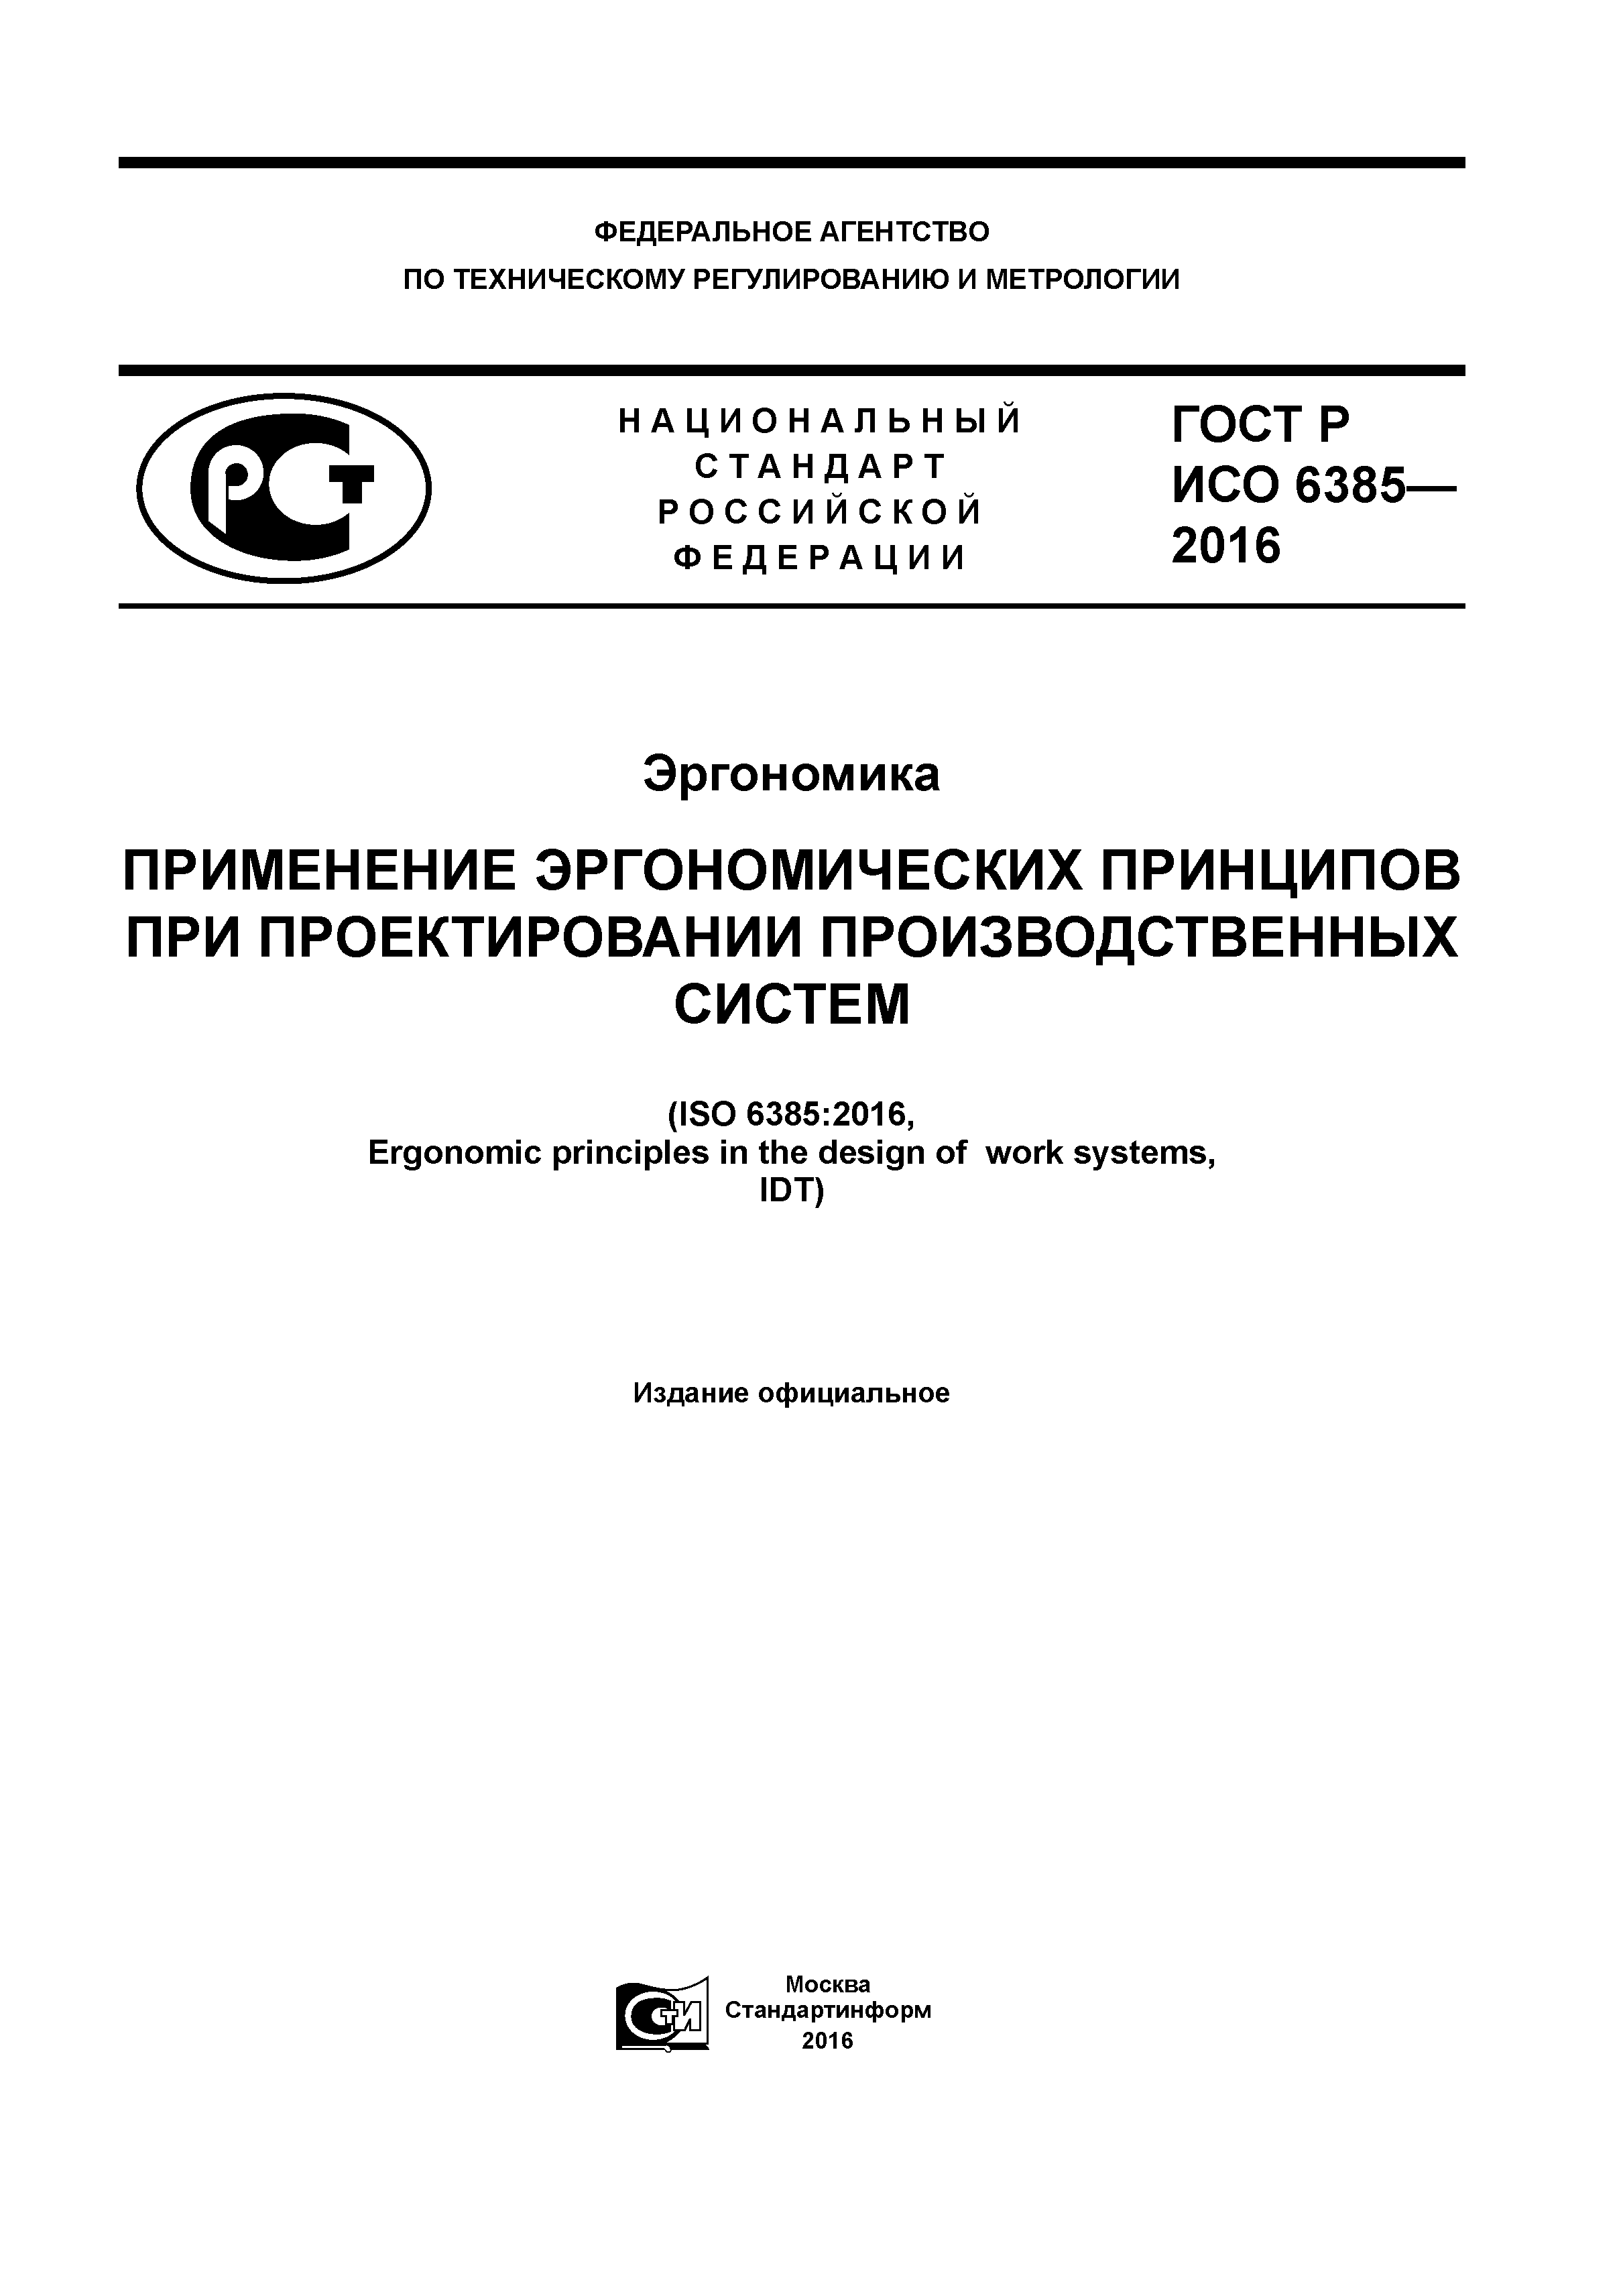 ГОСТ Р ИСО 6385-2016